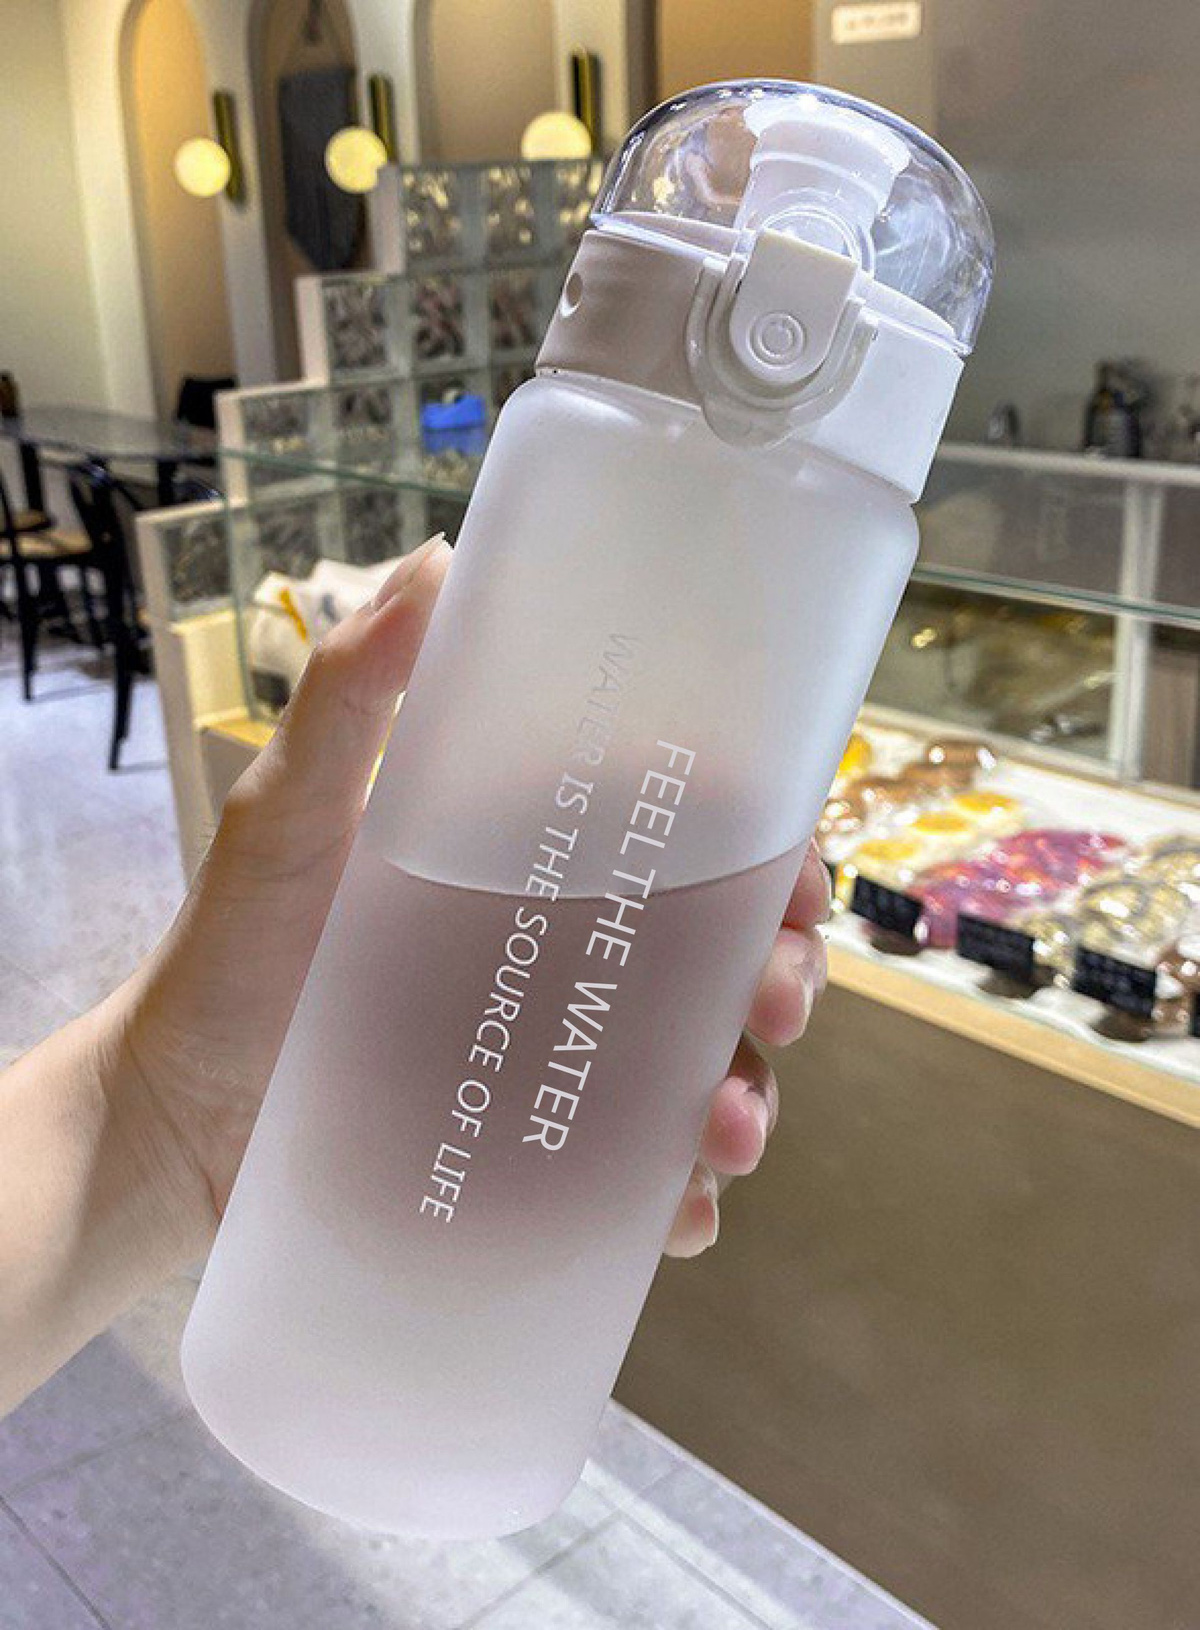     Пластиковая бутылка объемом 0,78 литра. Остановив свой выбор на этой модели, Вы приобретете эстетичную, надежную, удобную и качественную бутылку для воды, особенно если Вы активный человек и любите заниматься спортом. 